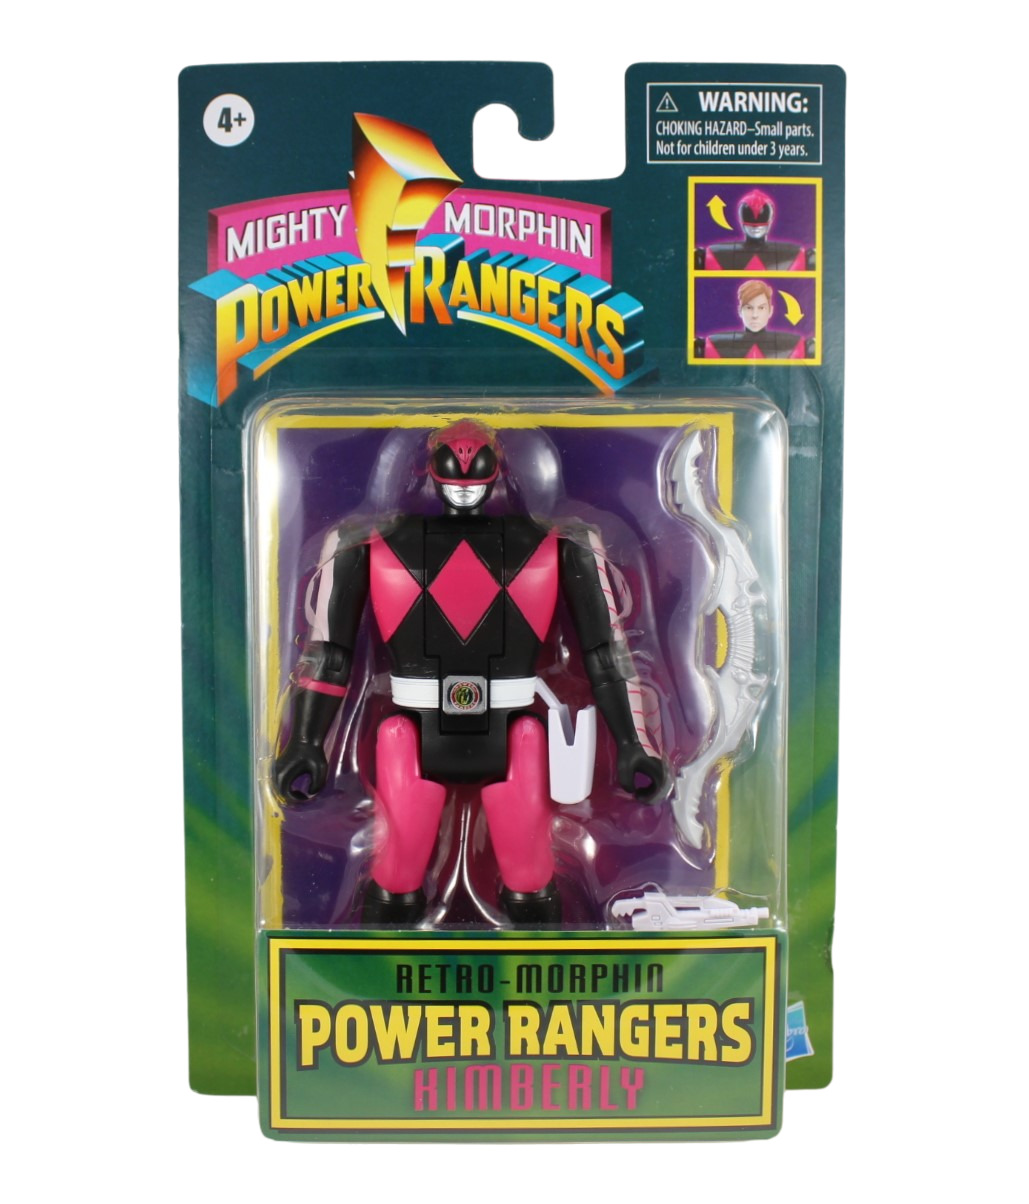 2021 Mighty Morphin Power Rangers Retro Morphin Pink Ranger Kimberly Figure